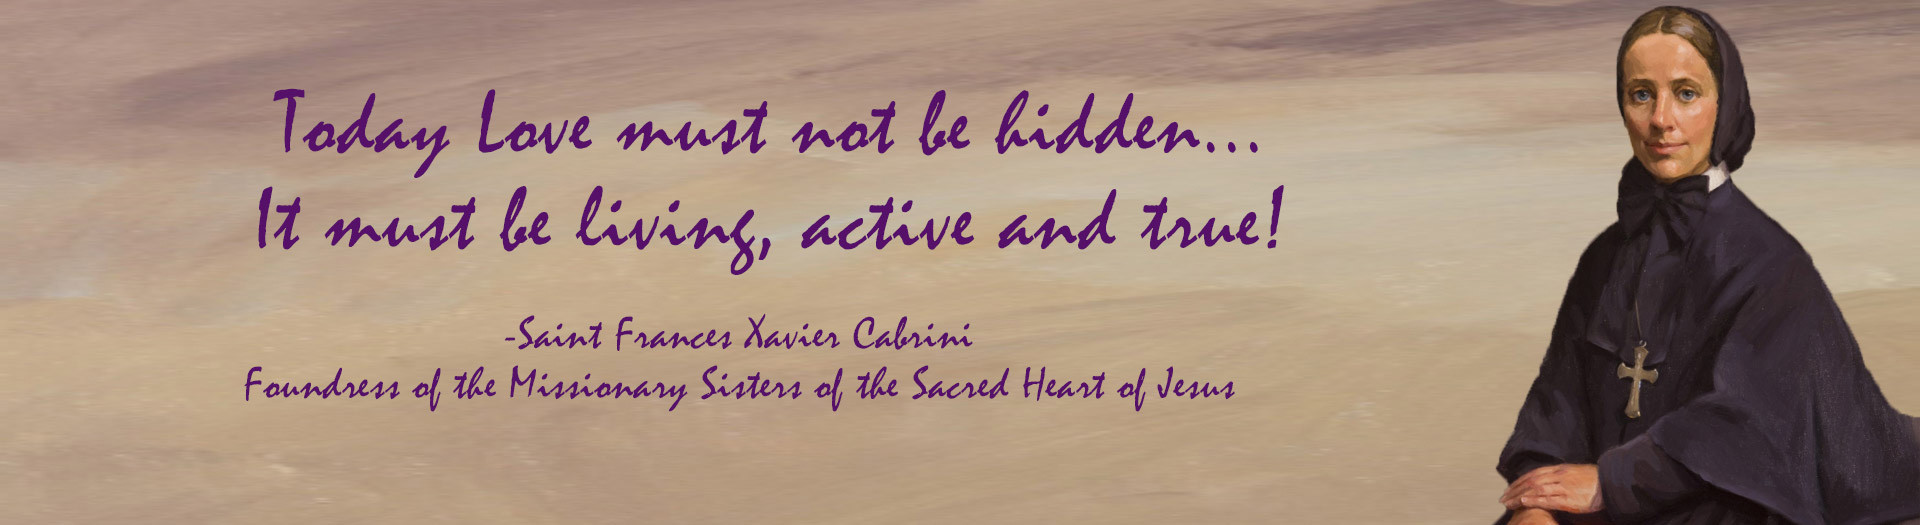 Saint Frances Xavier Cabrini quote